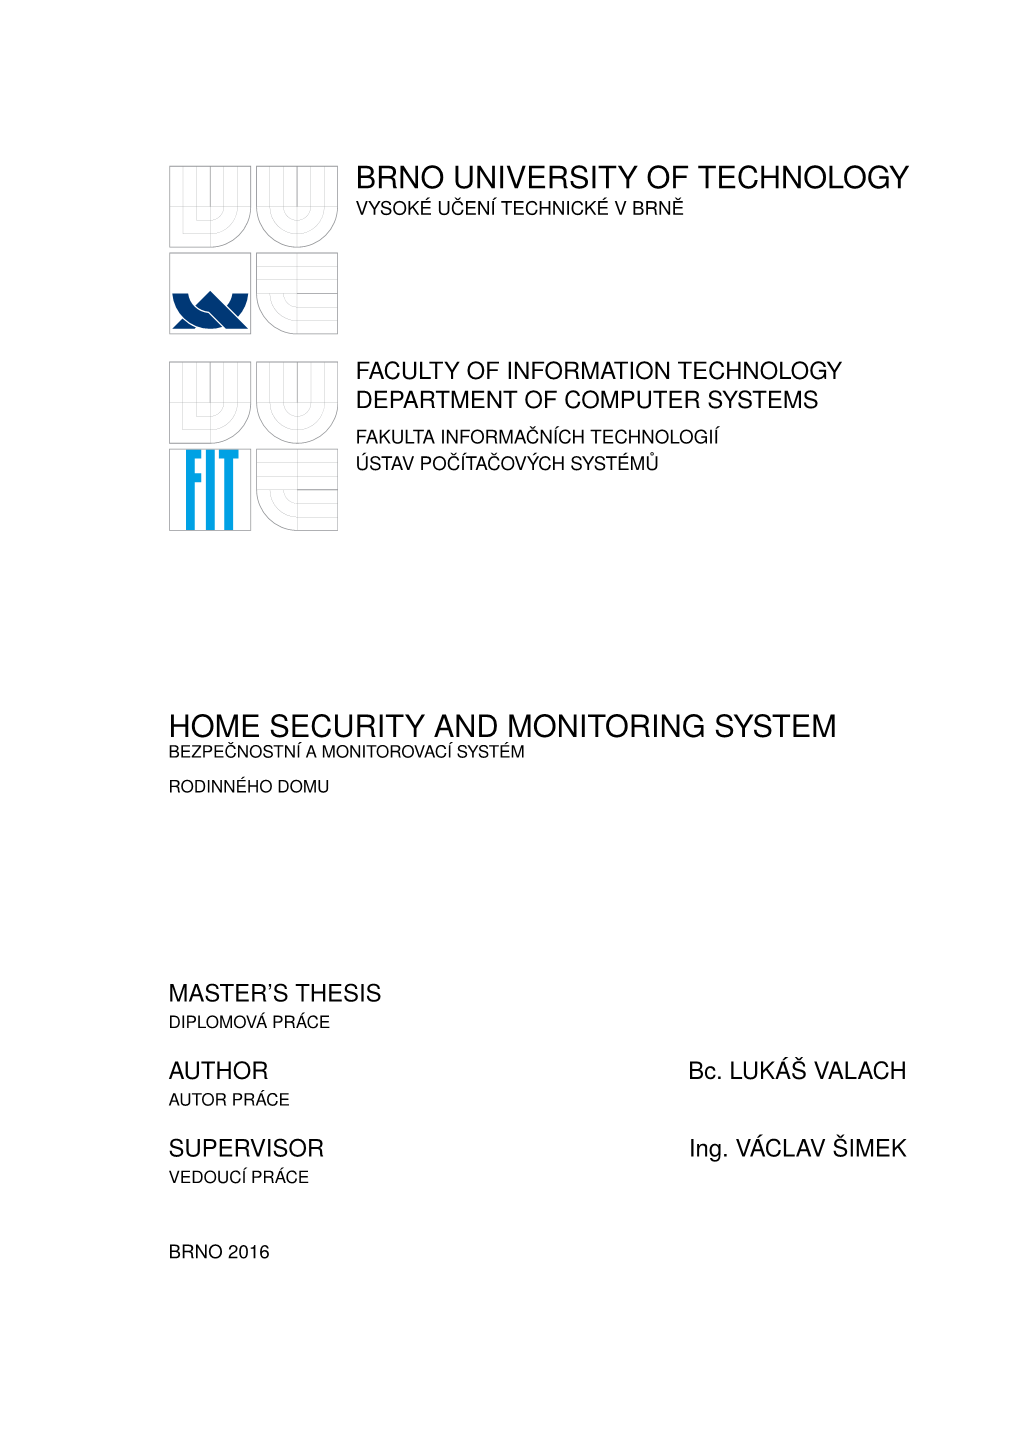 Home Security and Monitoring System Bezpečnostní a Monitorovací Systém